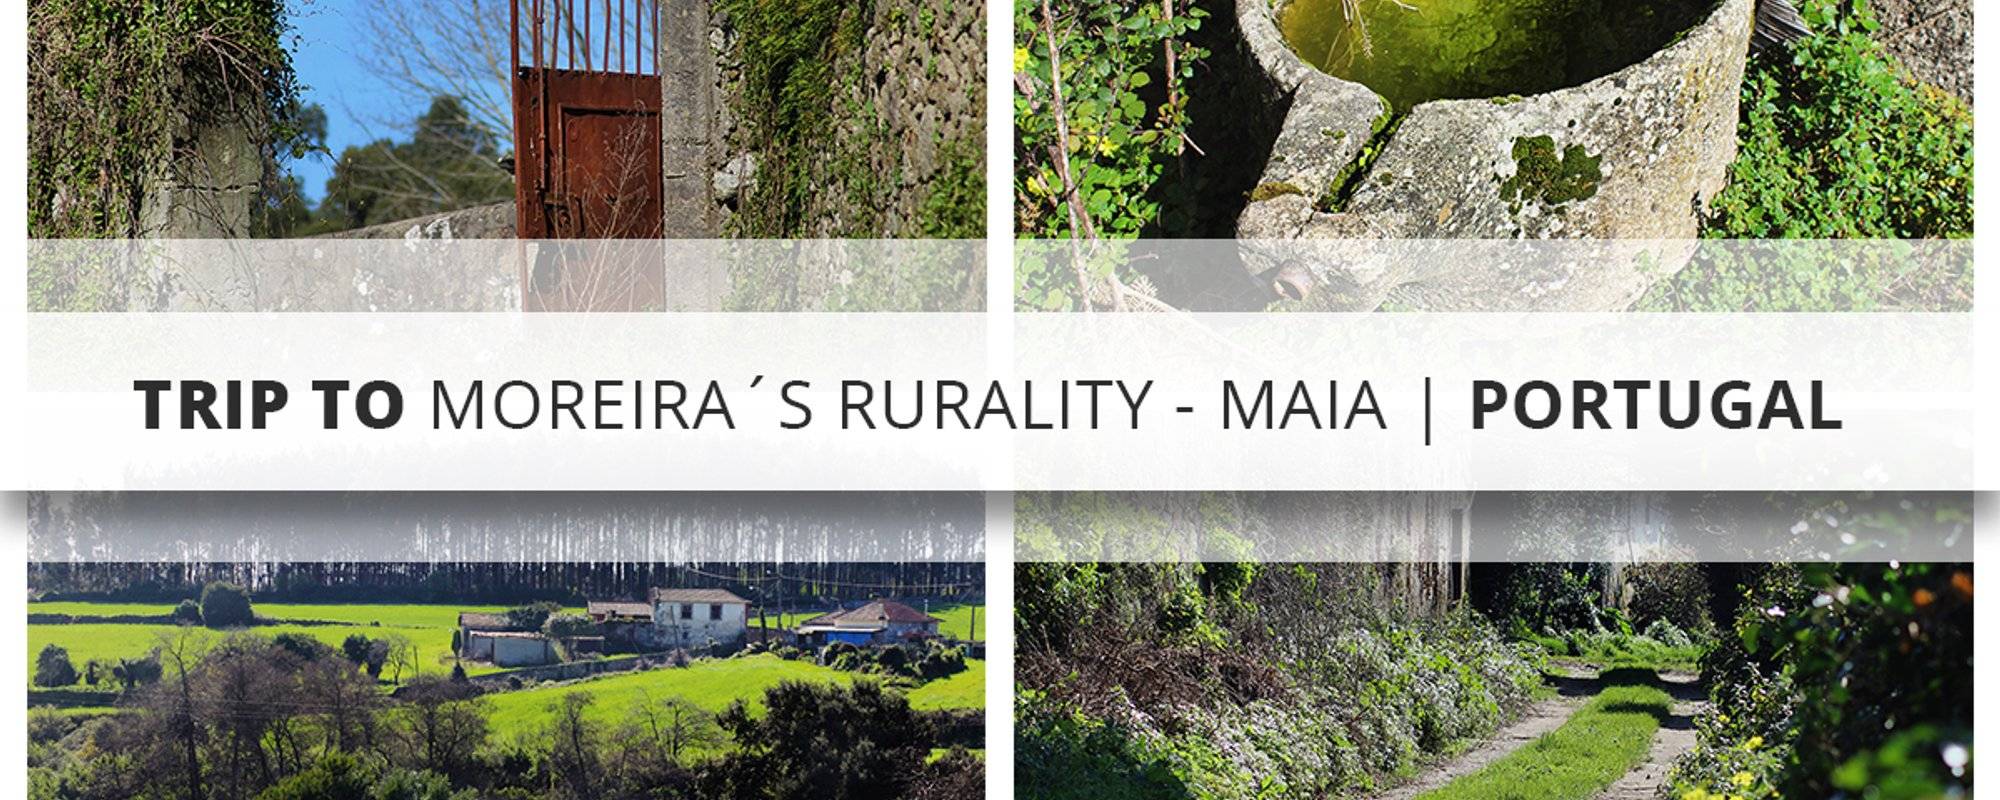 Trip to Moreira's Rurality - Maia | Portugal